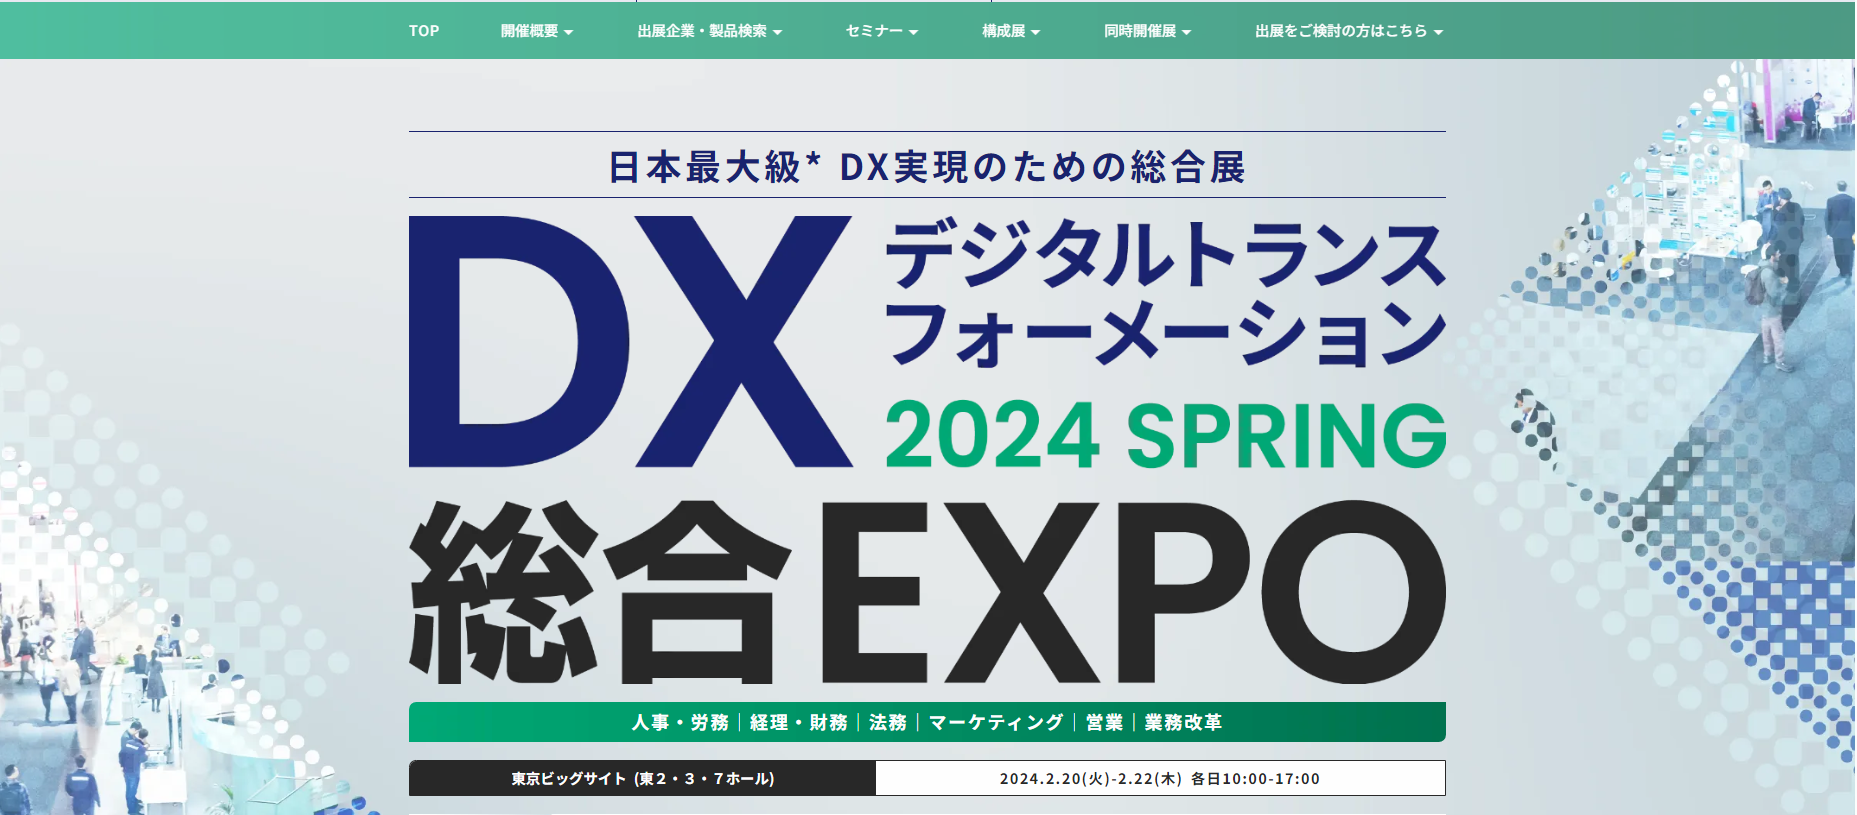 DX総合EXPO 2024 SPRING【東京ビッグサイト】